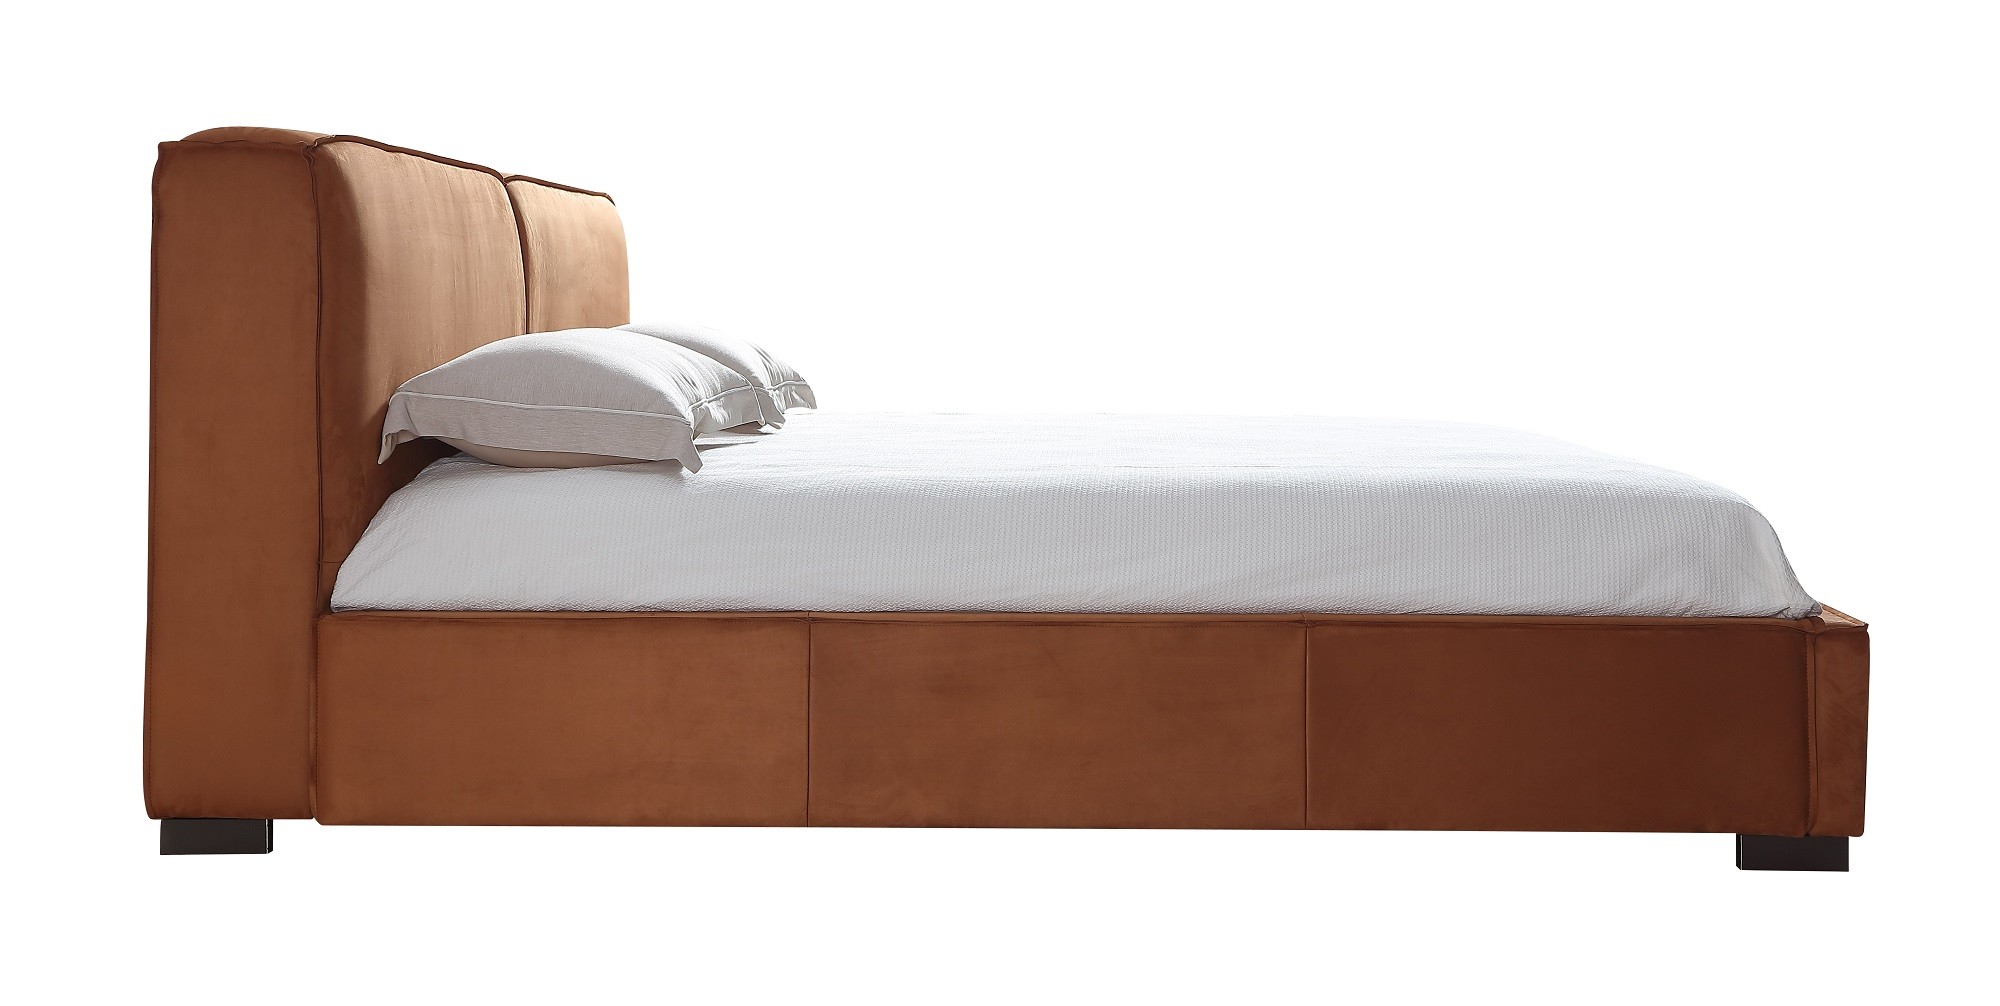 Refined Quality Elite Platform Bed